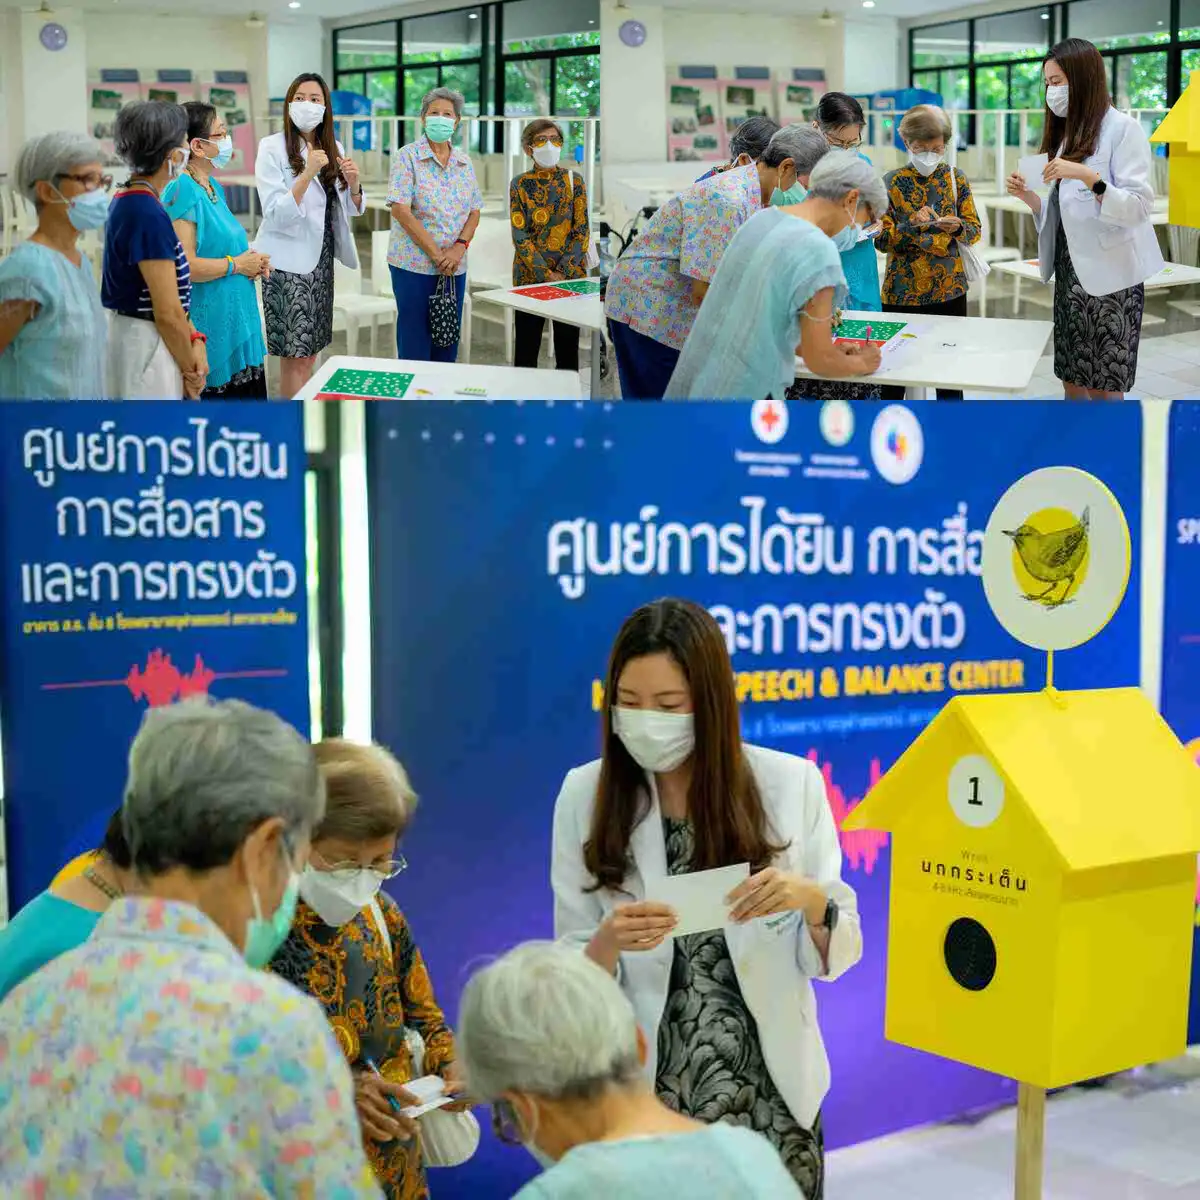 หูตึง ภัยเงียบเสี่ยงสมองเสื่อม หมอจุฬาฯ ร่วมกับทุนวิจัยรัฐบาลอังกฤษ จัดนิทรรศการ “บ้านนก” ครั้งแรกในไทย HealthServ